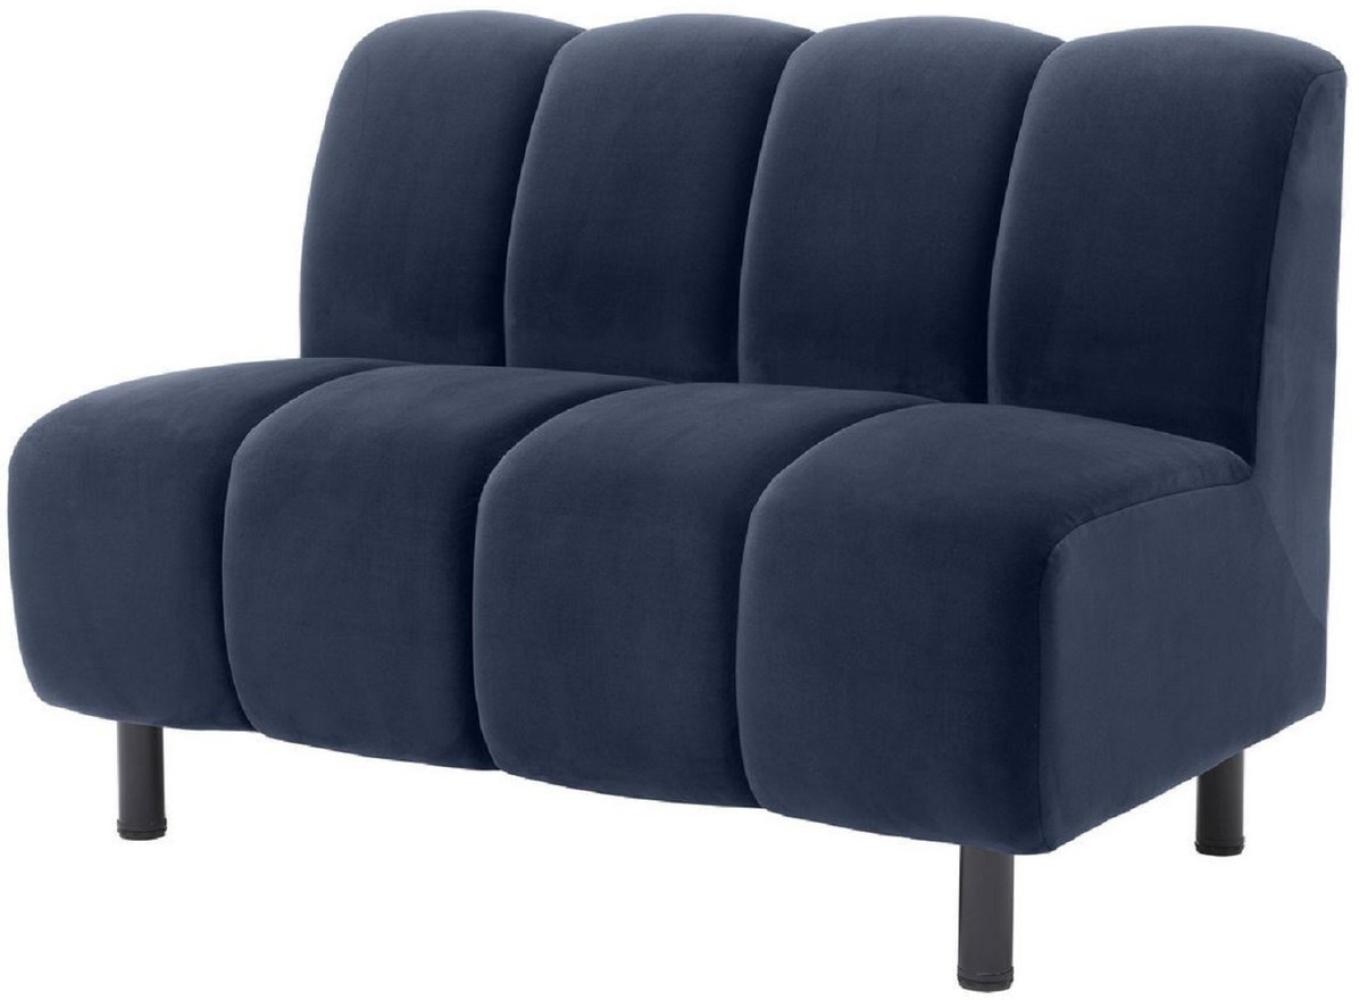 Casa Padrino Luxus Couch Mitternachtsblau / Schwarz 121 x 75 x H. 87 cm - Wohnzimmer Sofa mit edlem Samtstoff - Luxus Möbel Bild 1